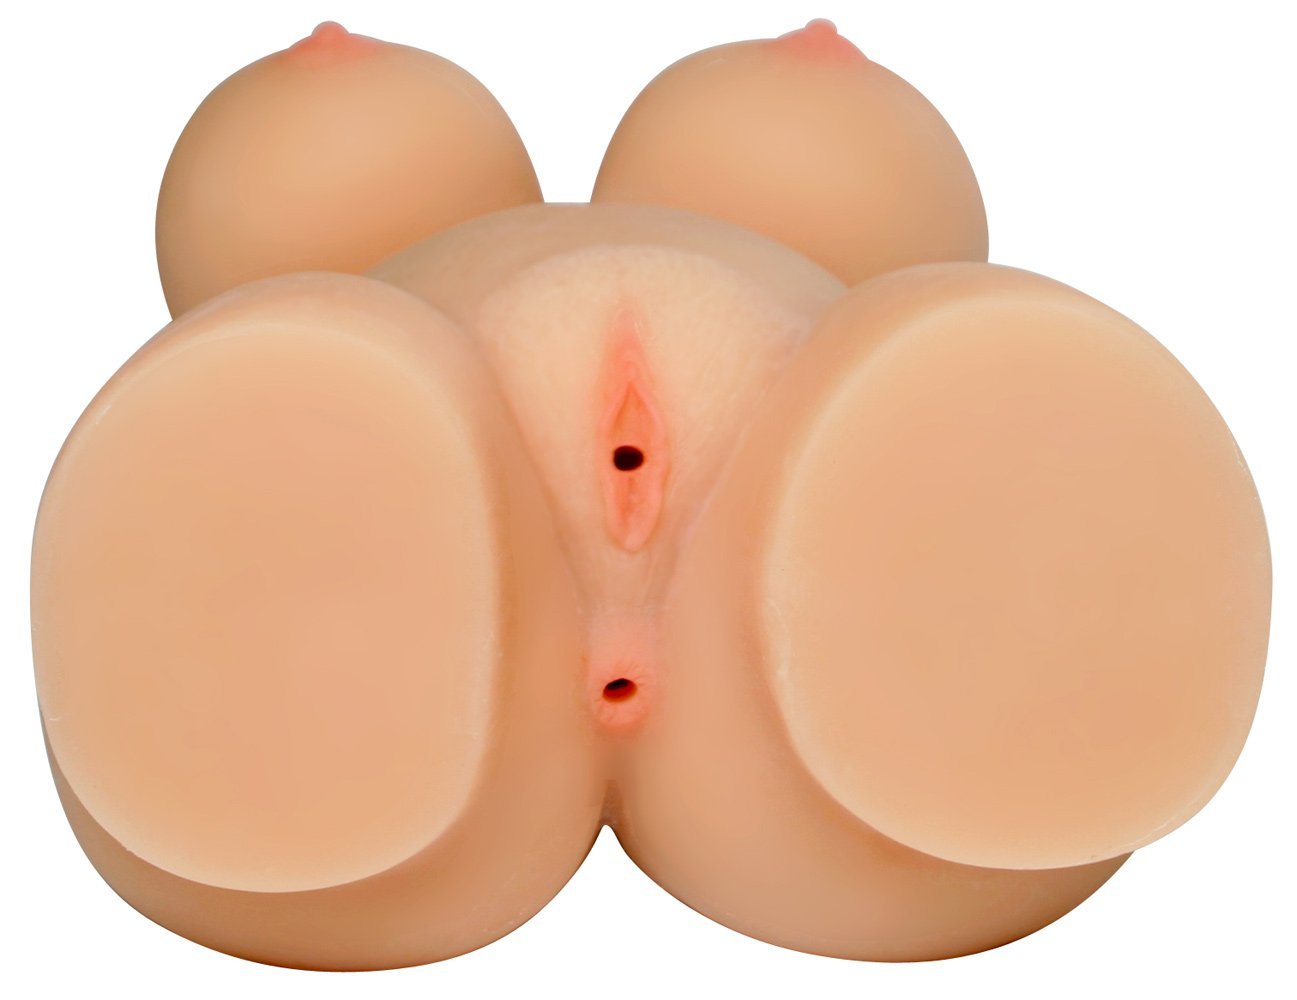  Sỉ Búp bê silicon ngực tròn căng mông mẩy có tốt không?